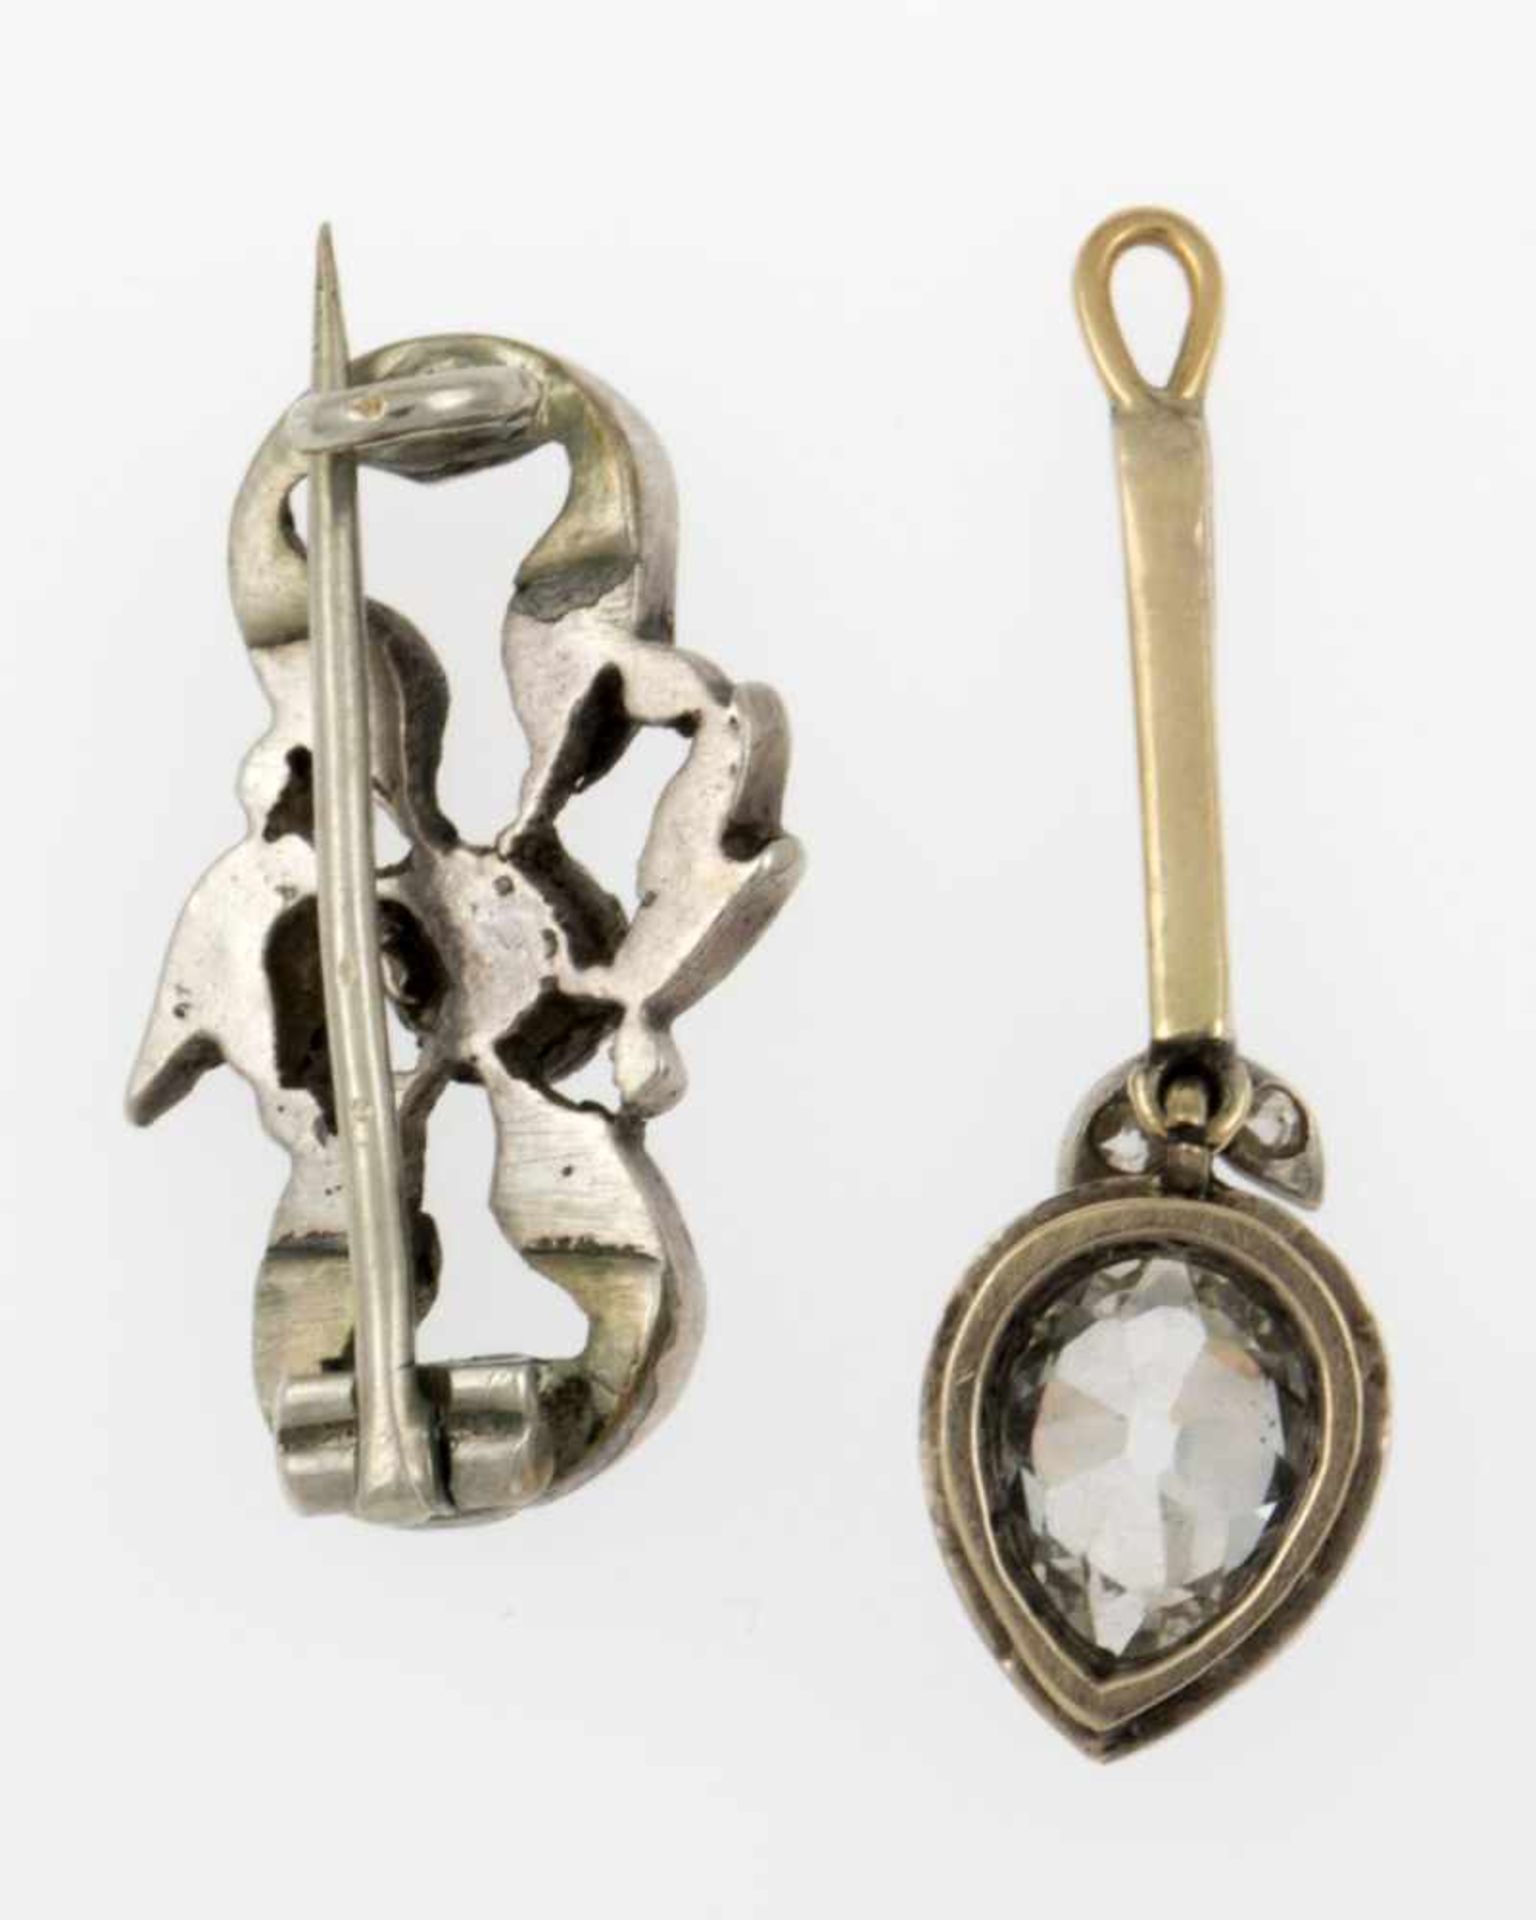 Zarter Diamant-Anhänger und kleine BroscheGelbgold 585 (geprüft) und Silber bzw. Silber. - Bild 2 aus 2